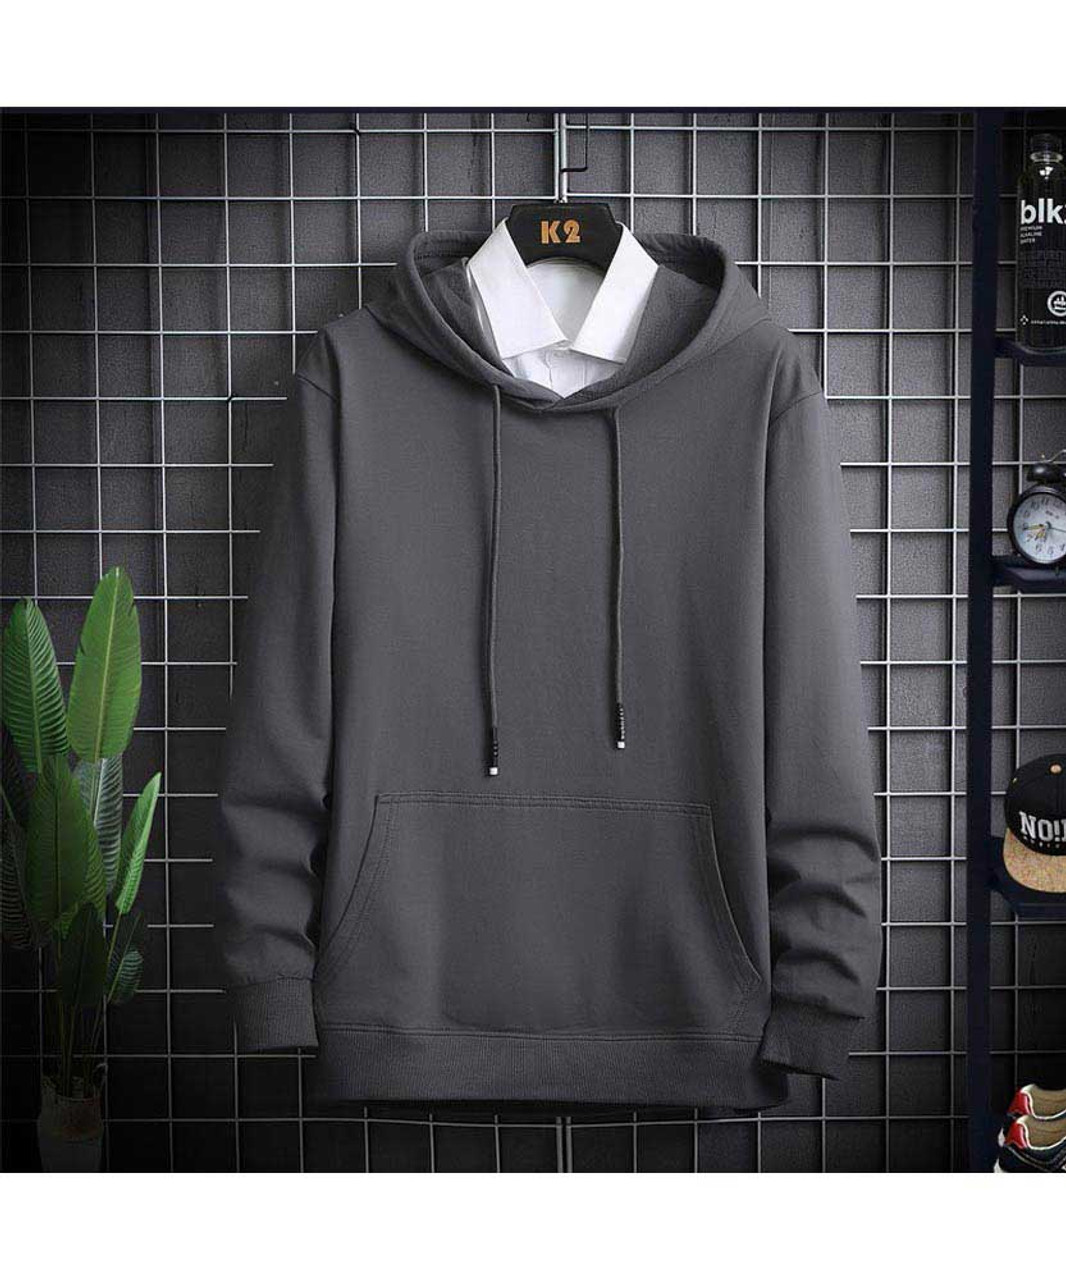 Oprecht slijtage Jasje Grey simple plain color pull over hoodies | Mens hoodies online 1575MCLO